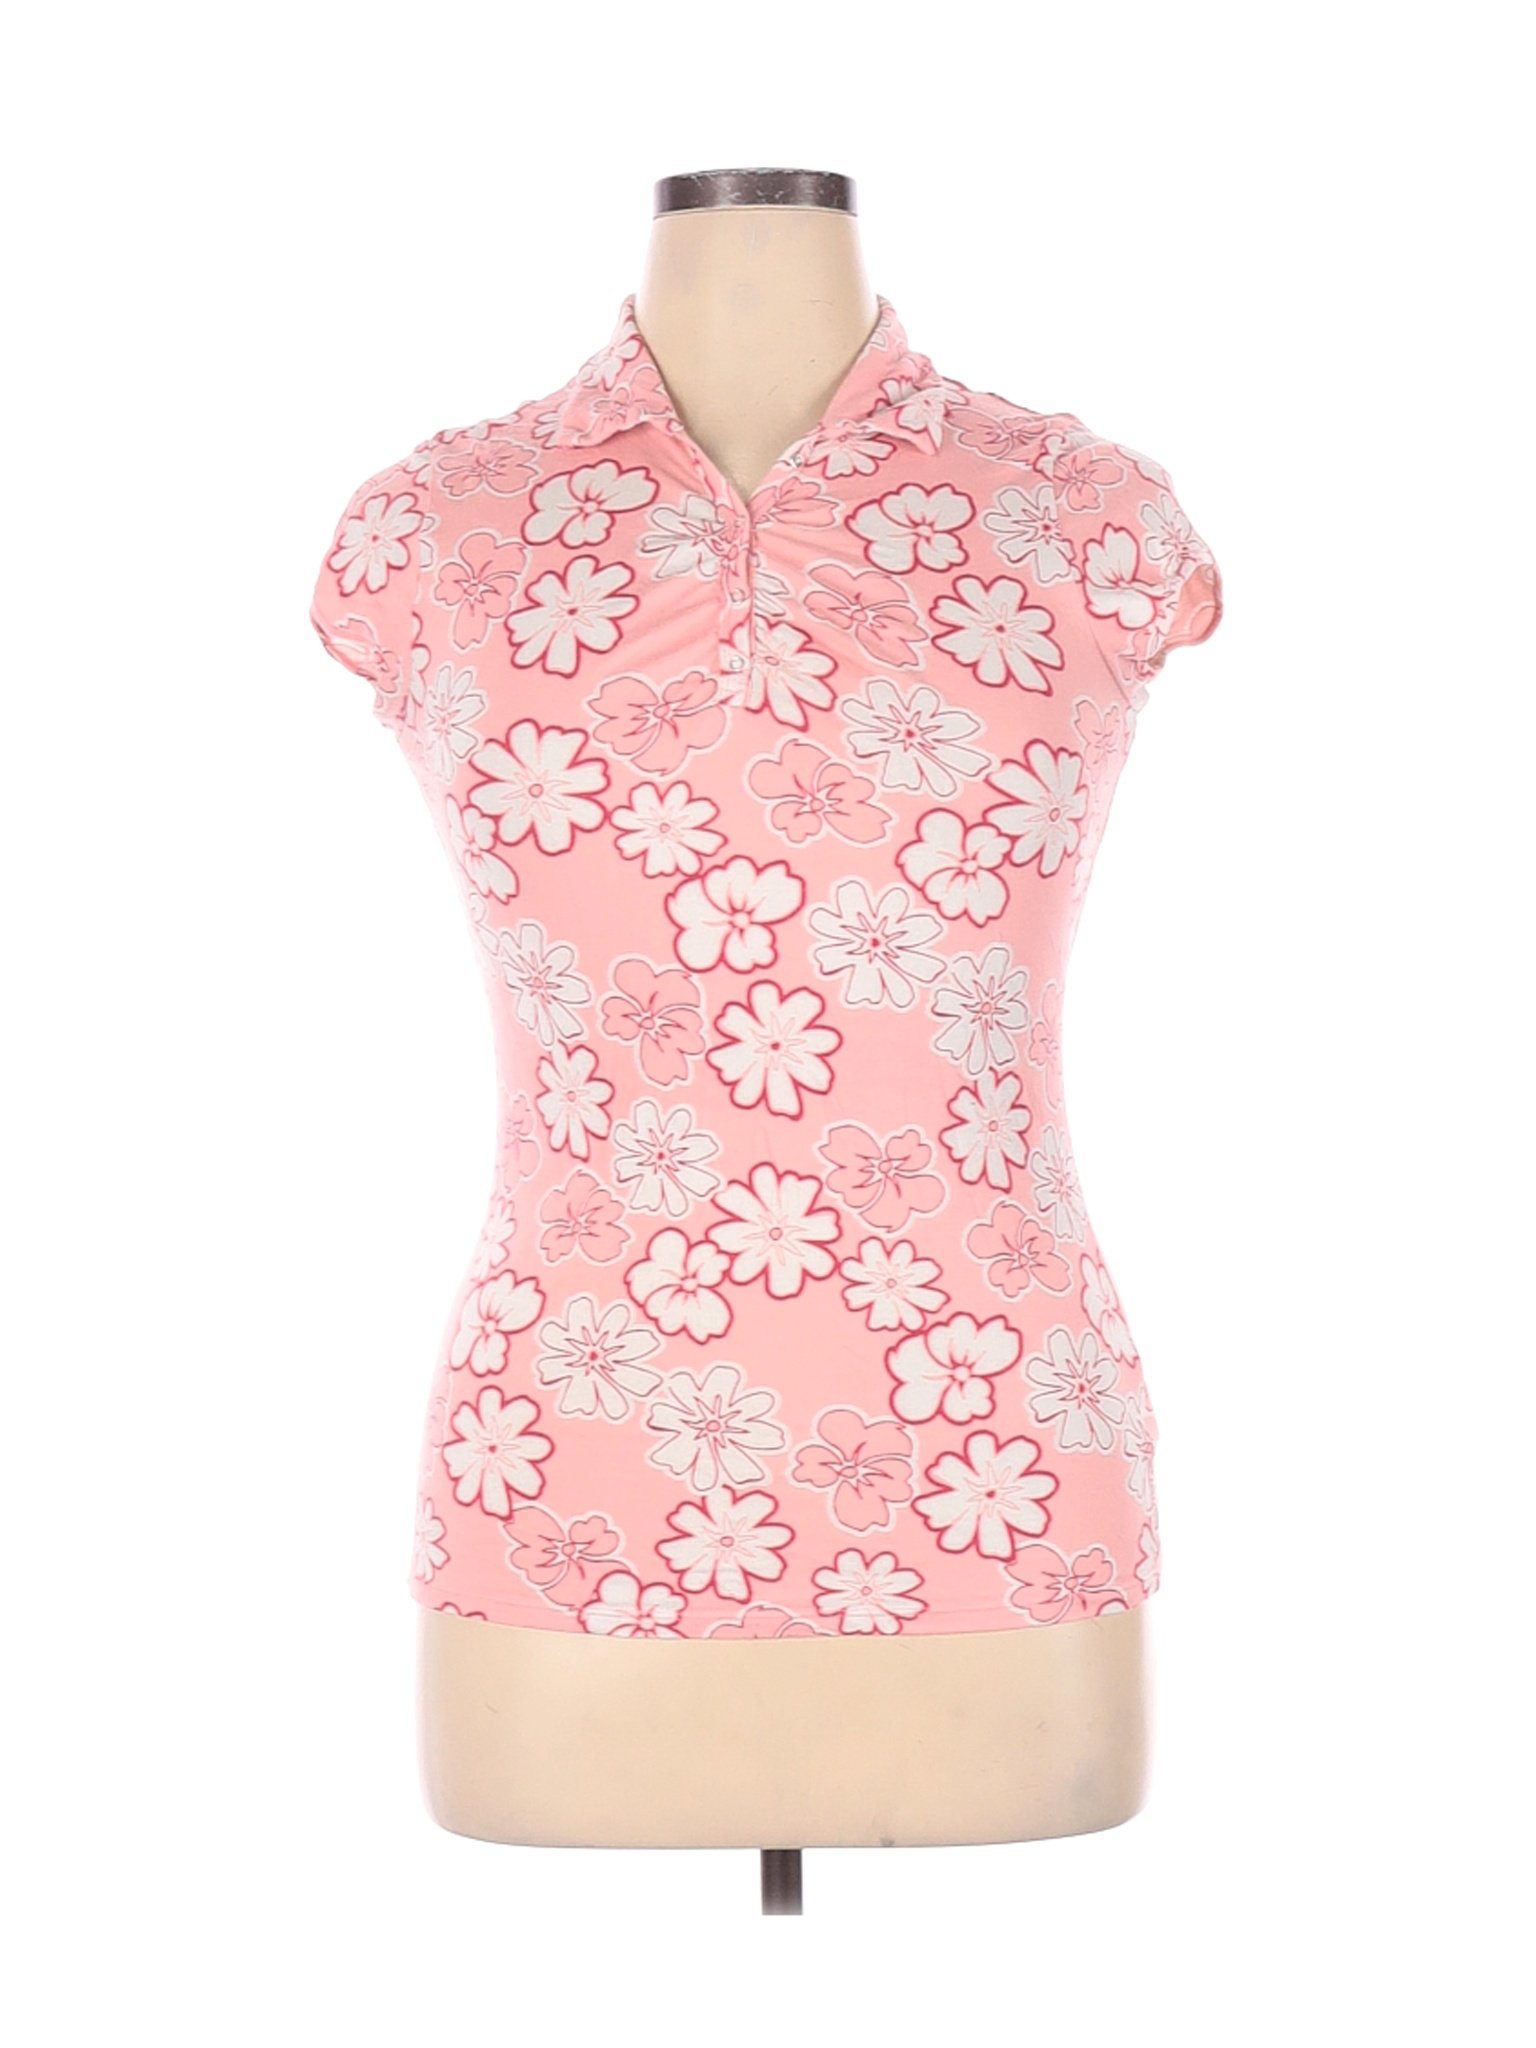 So Wear It Declare it Women Pink Short Sleeve Polo XL | eBay